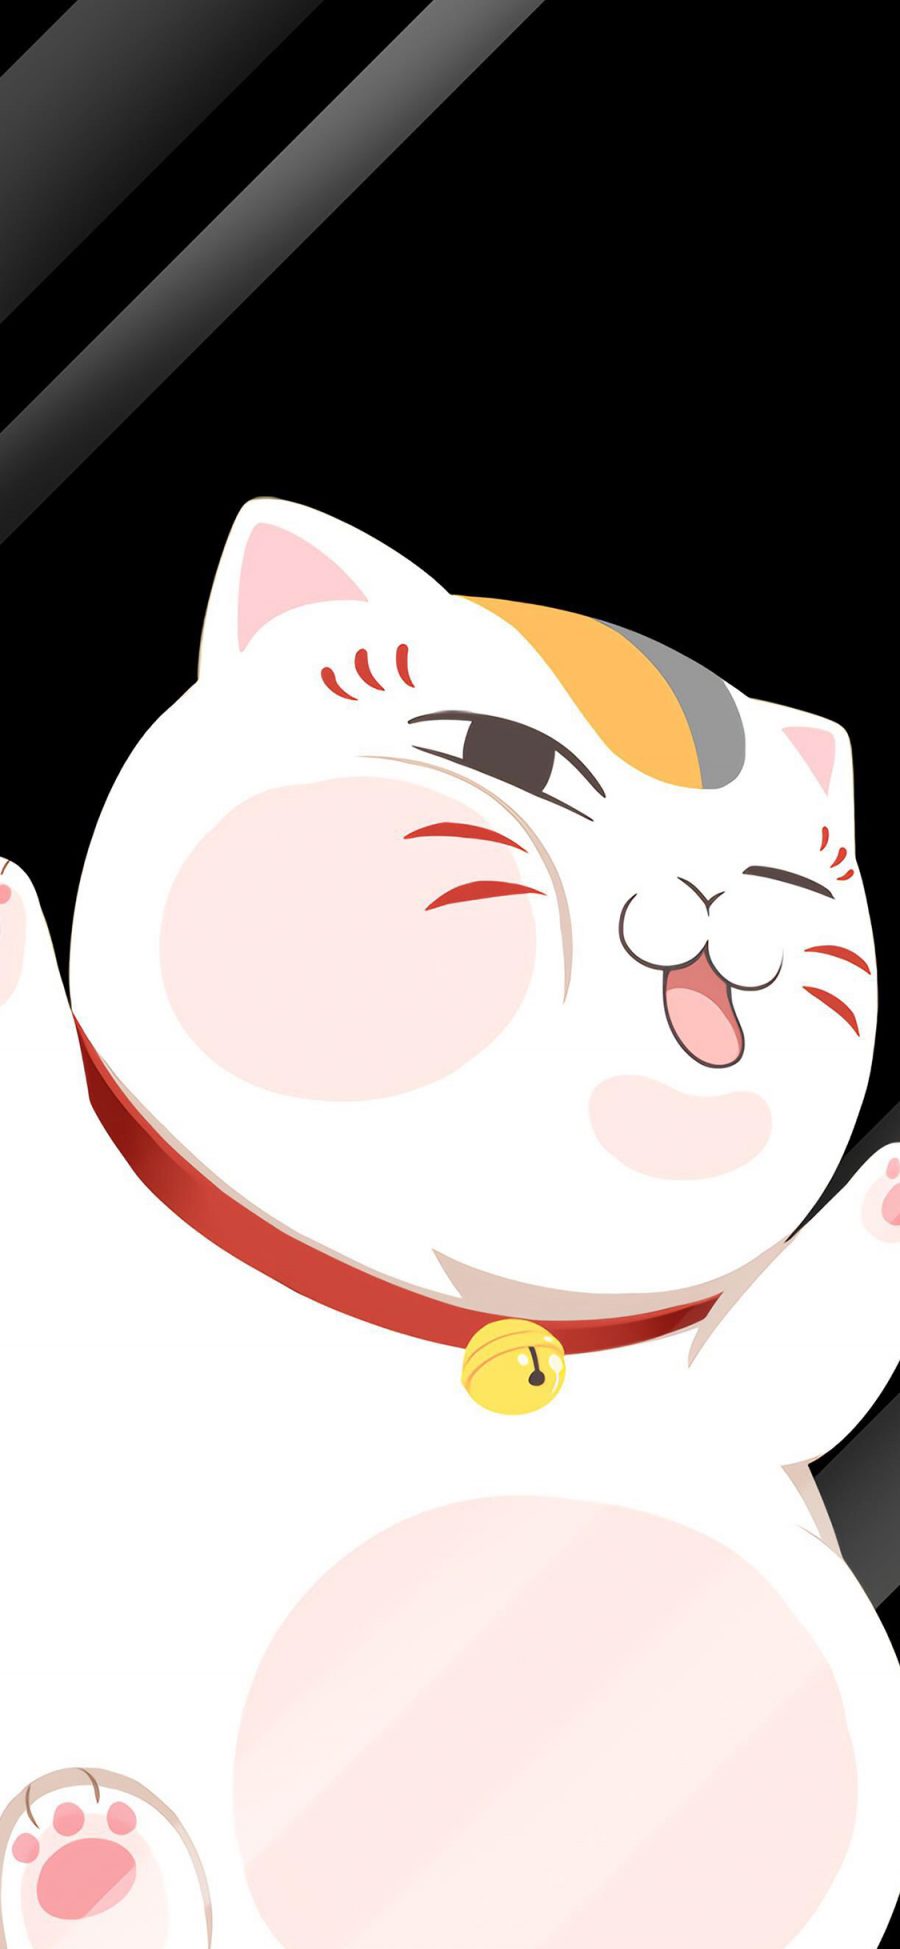 [2436×1125]猫咪老师 夏目友人帐 玻璃 日本 漫画 苹果手机动漫壁纸图片